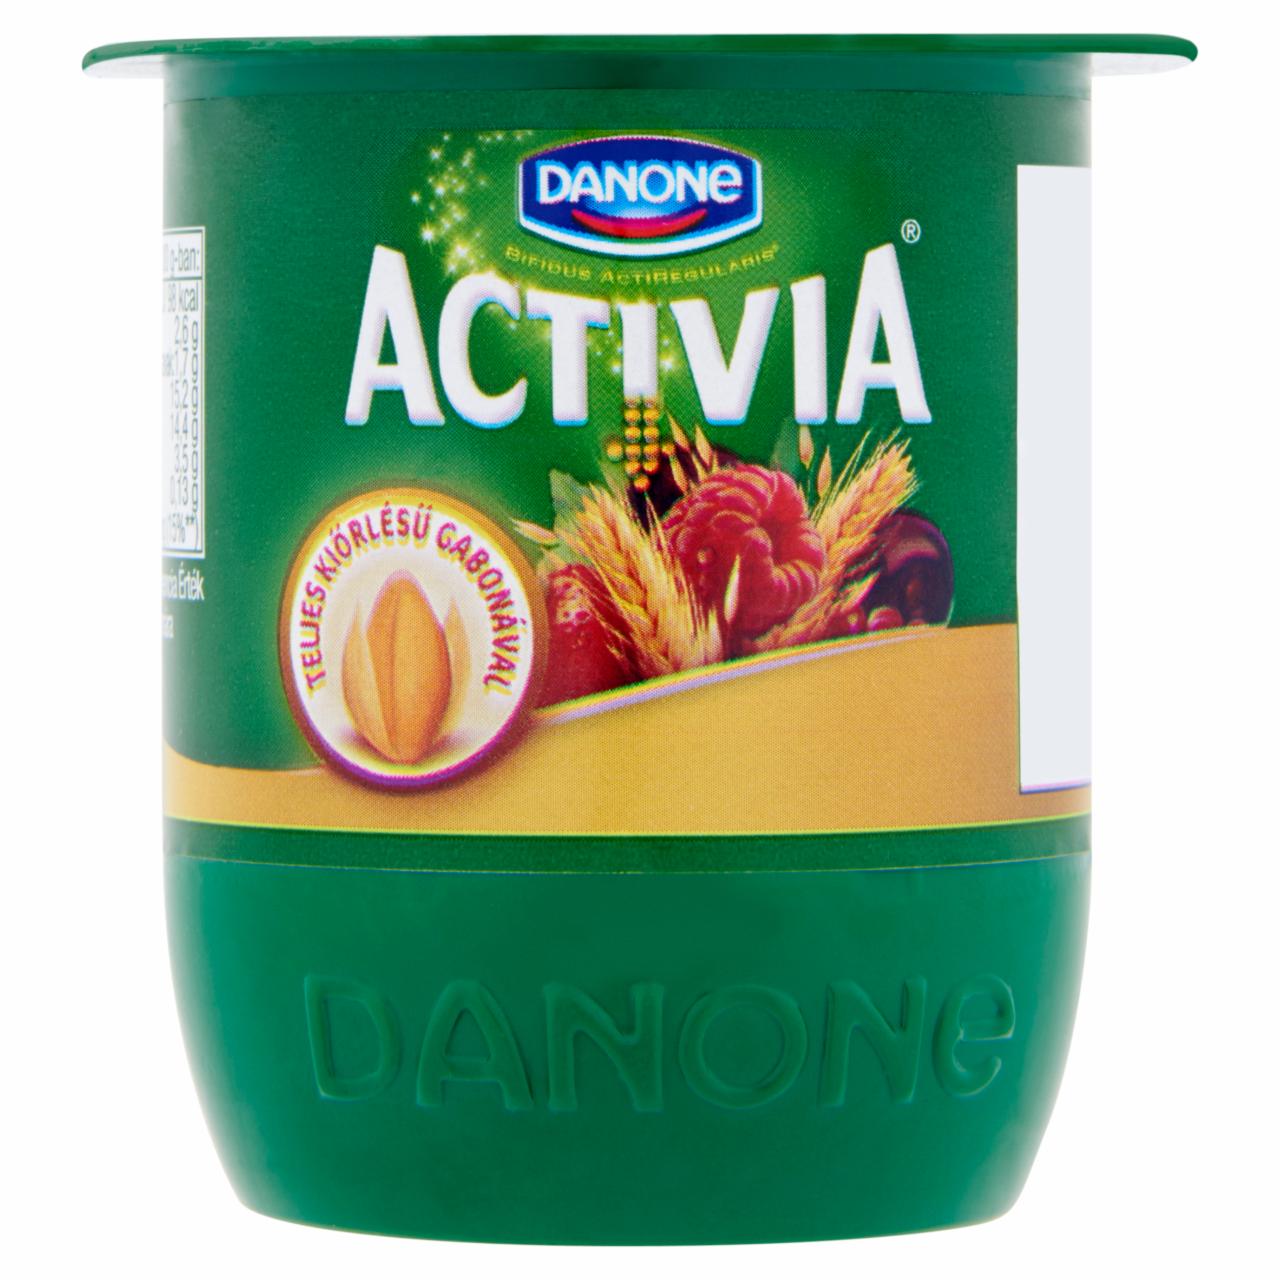 Képek - Danone Activia élőflórás, zsírszegény joghurt piros gyümölcsökkel és teljes kiőrlésű gabonával 125 g